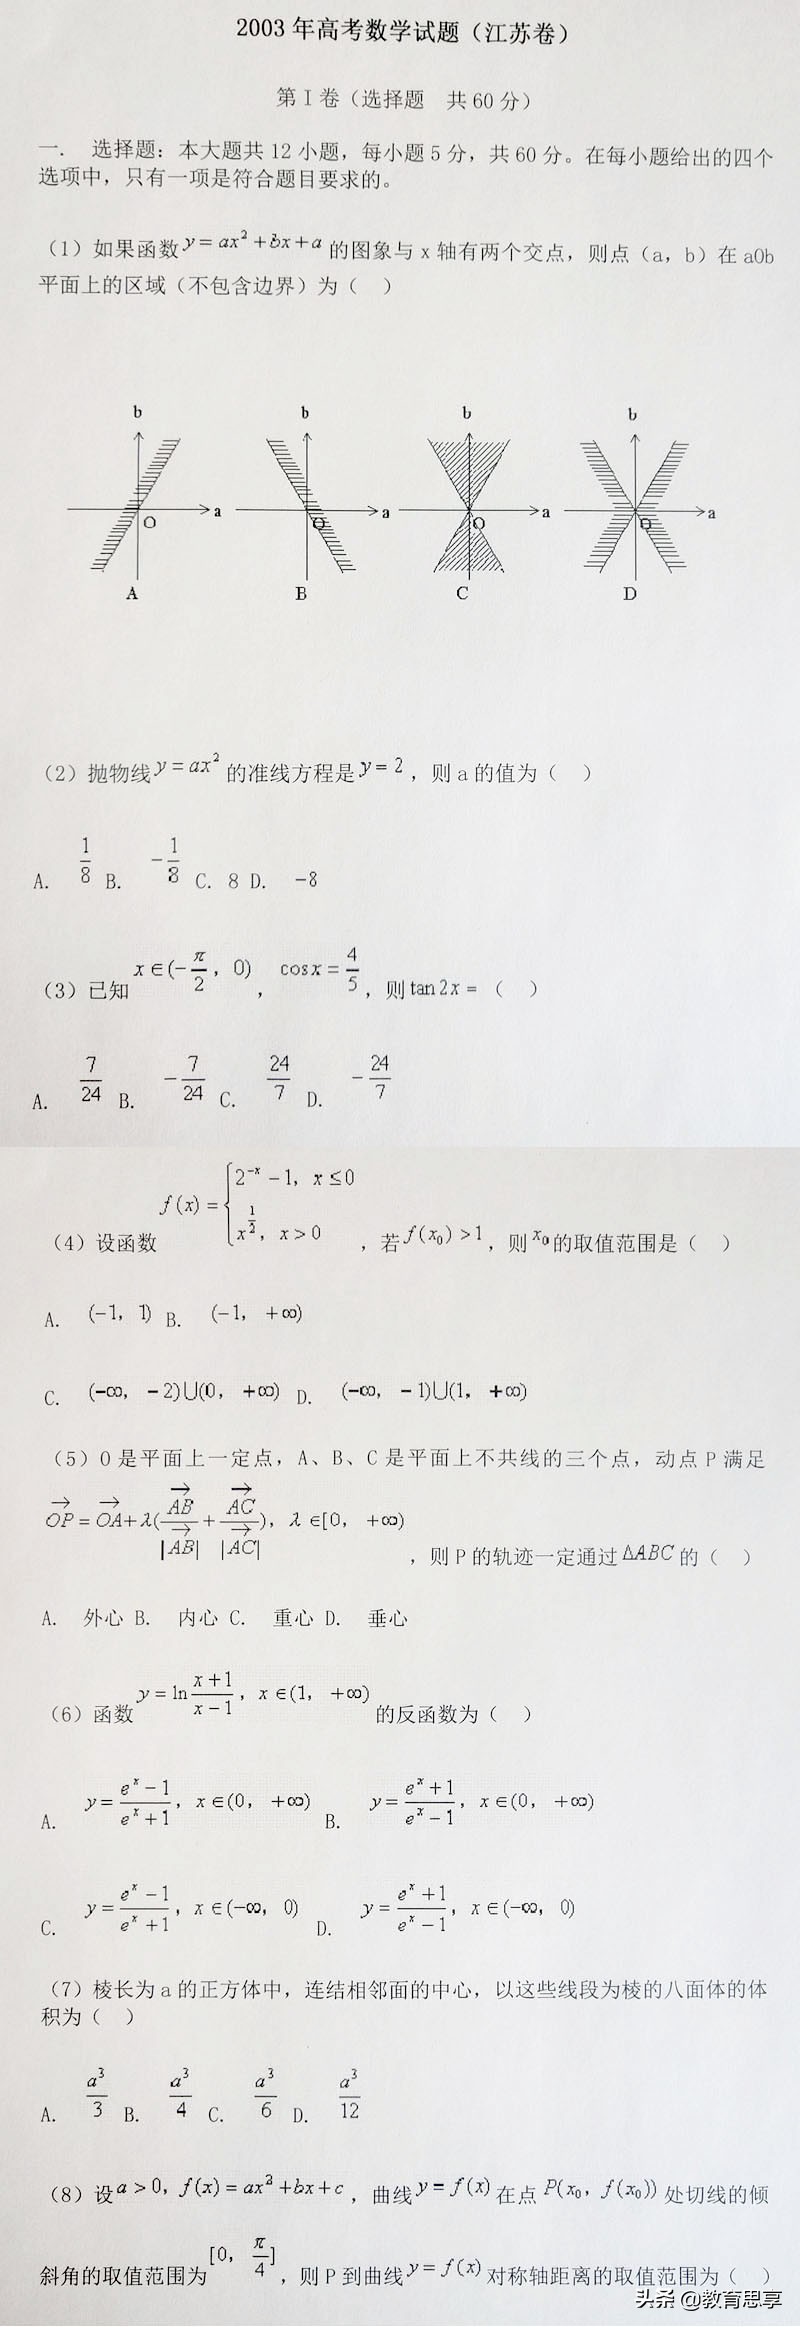 2003江苏高考数学试卷「2003江苏高考一分一段表」